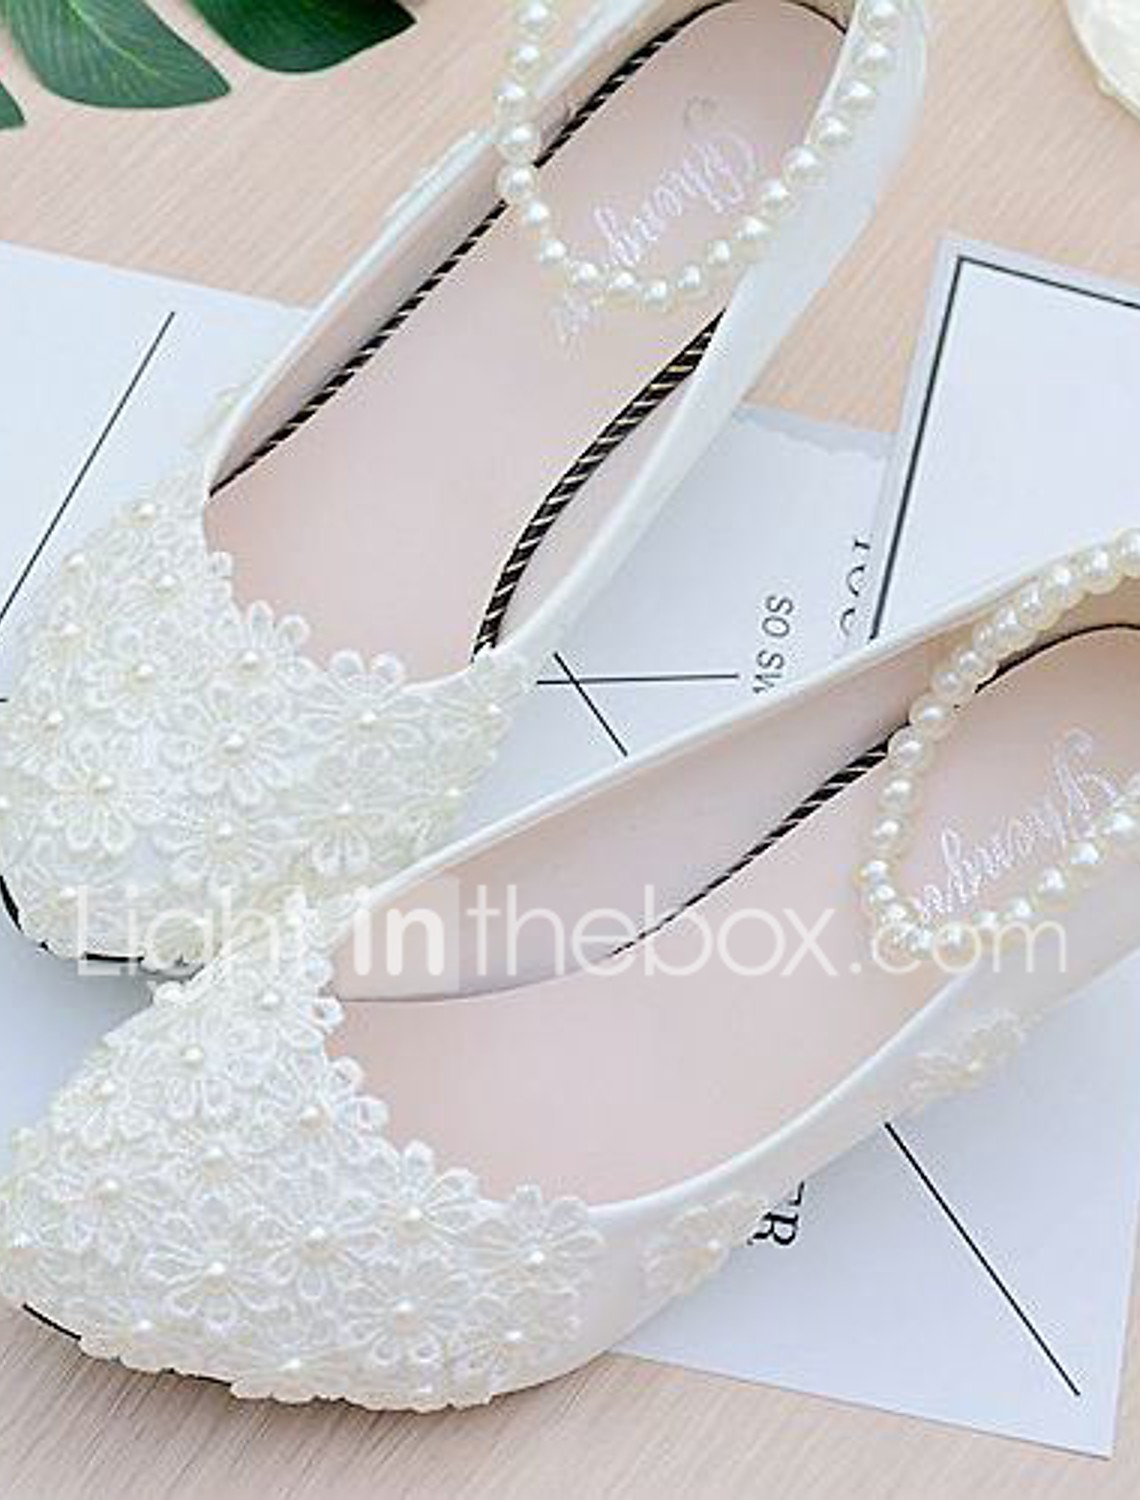 jeweled wedding shoes